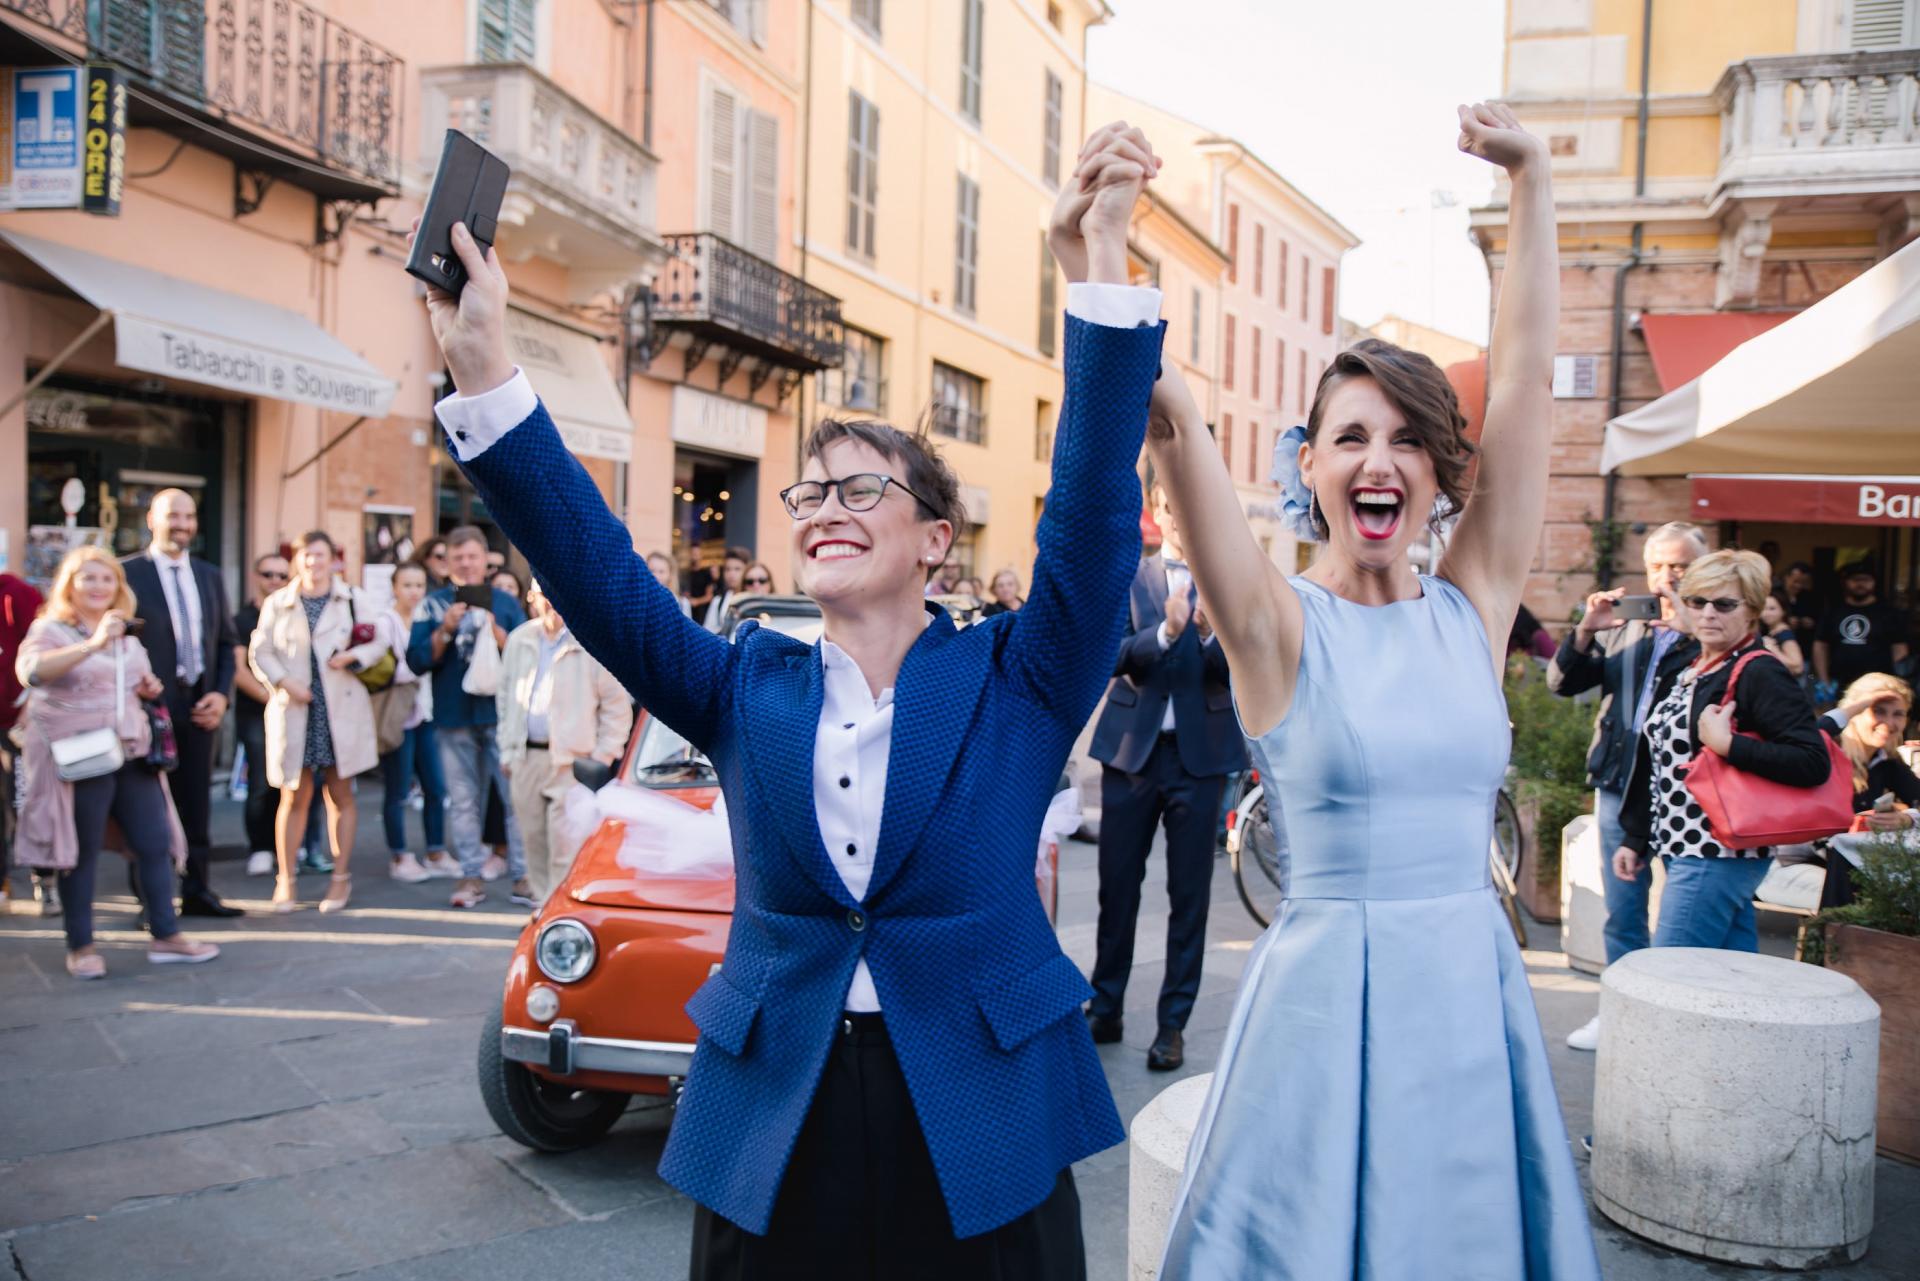 Paola&Sara Matrimonio Wedding Same Sex Italia Italy MCE Stories Destination Photographer